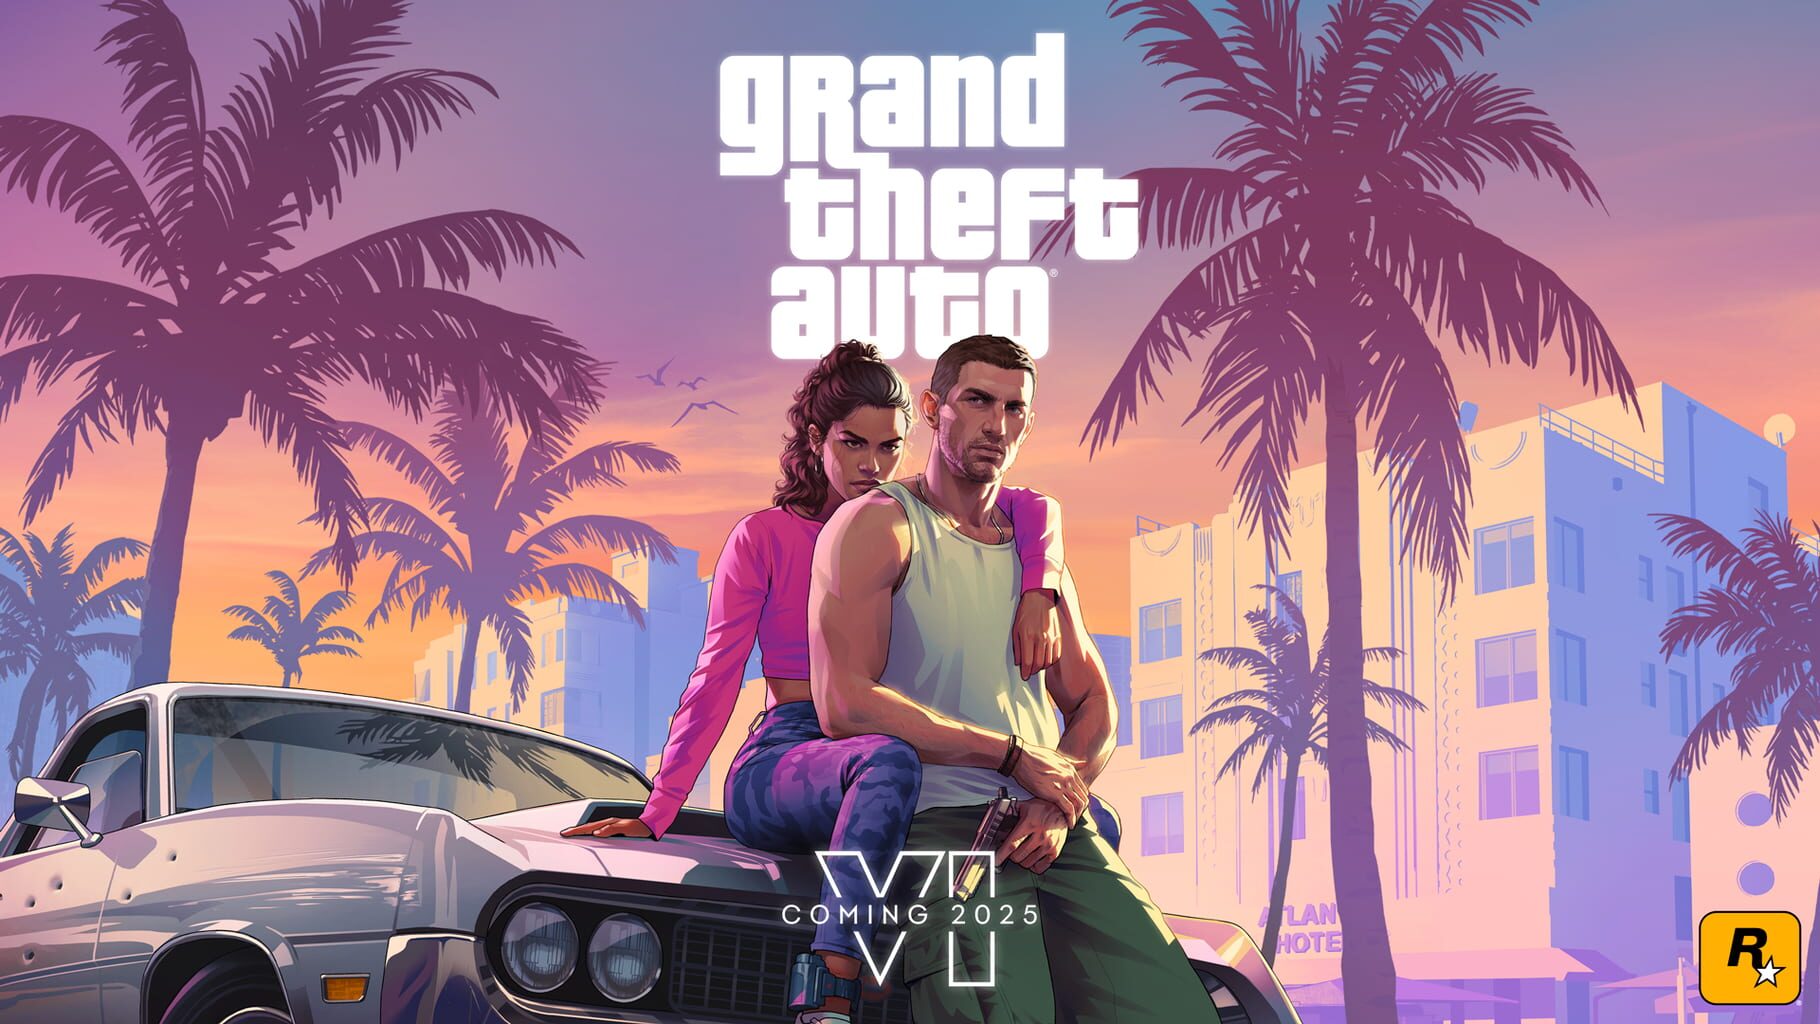 Grand Theft Auto VI Image